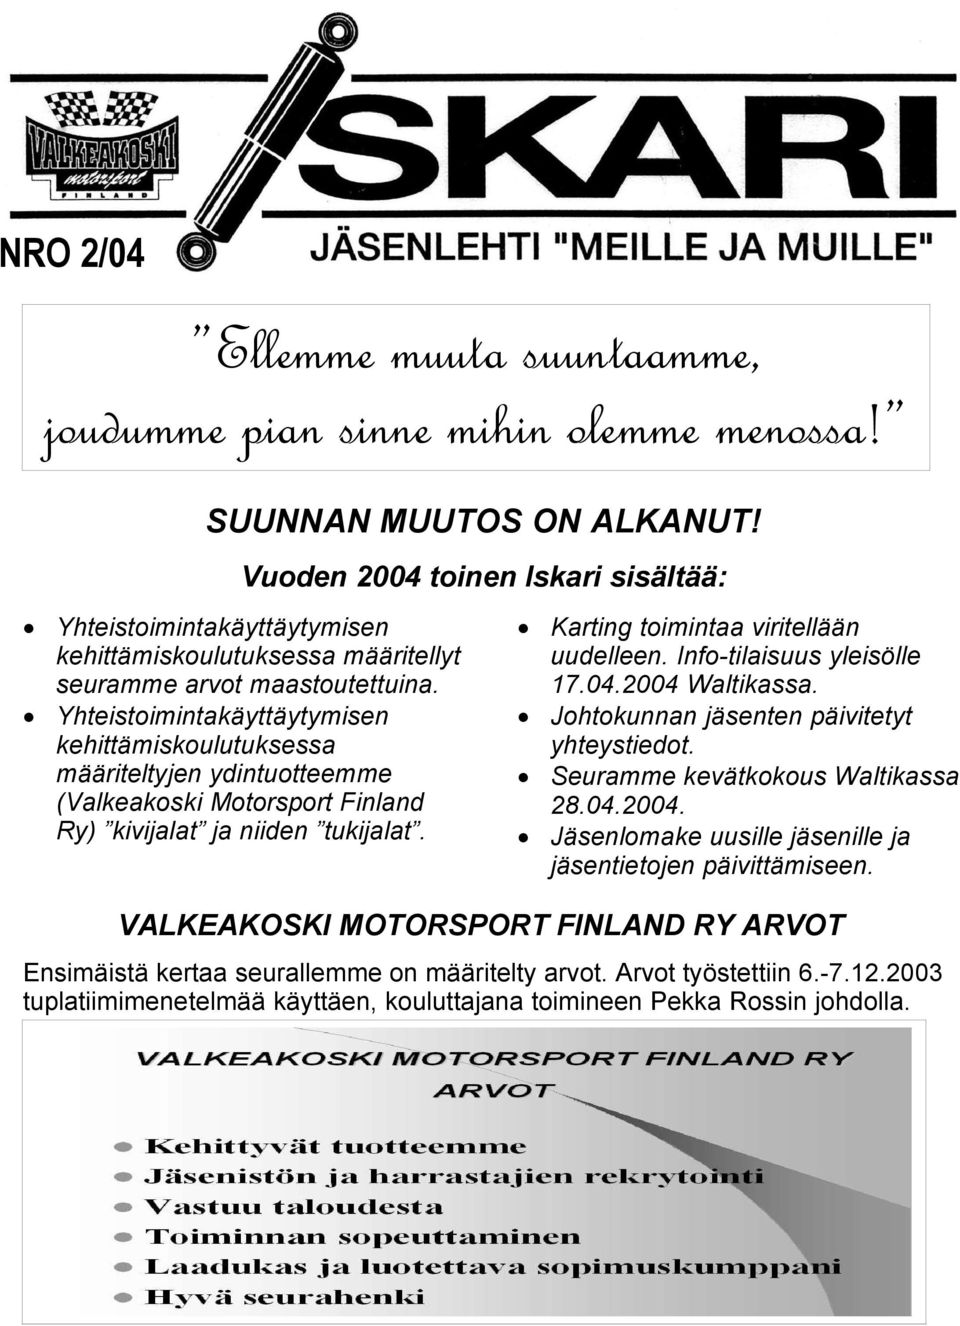 Yhteistoimintakäyttäytymisen kehittämiskoulutuksessa määriteltyjen ydintuotteemme (Valkeakoski Motorsport Finland Ry) kivijalat ja niiden tukijalat. Karting toimintaa viritellään uudelleen.